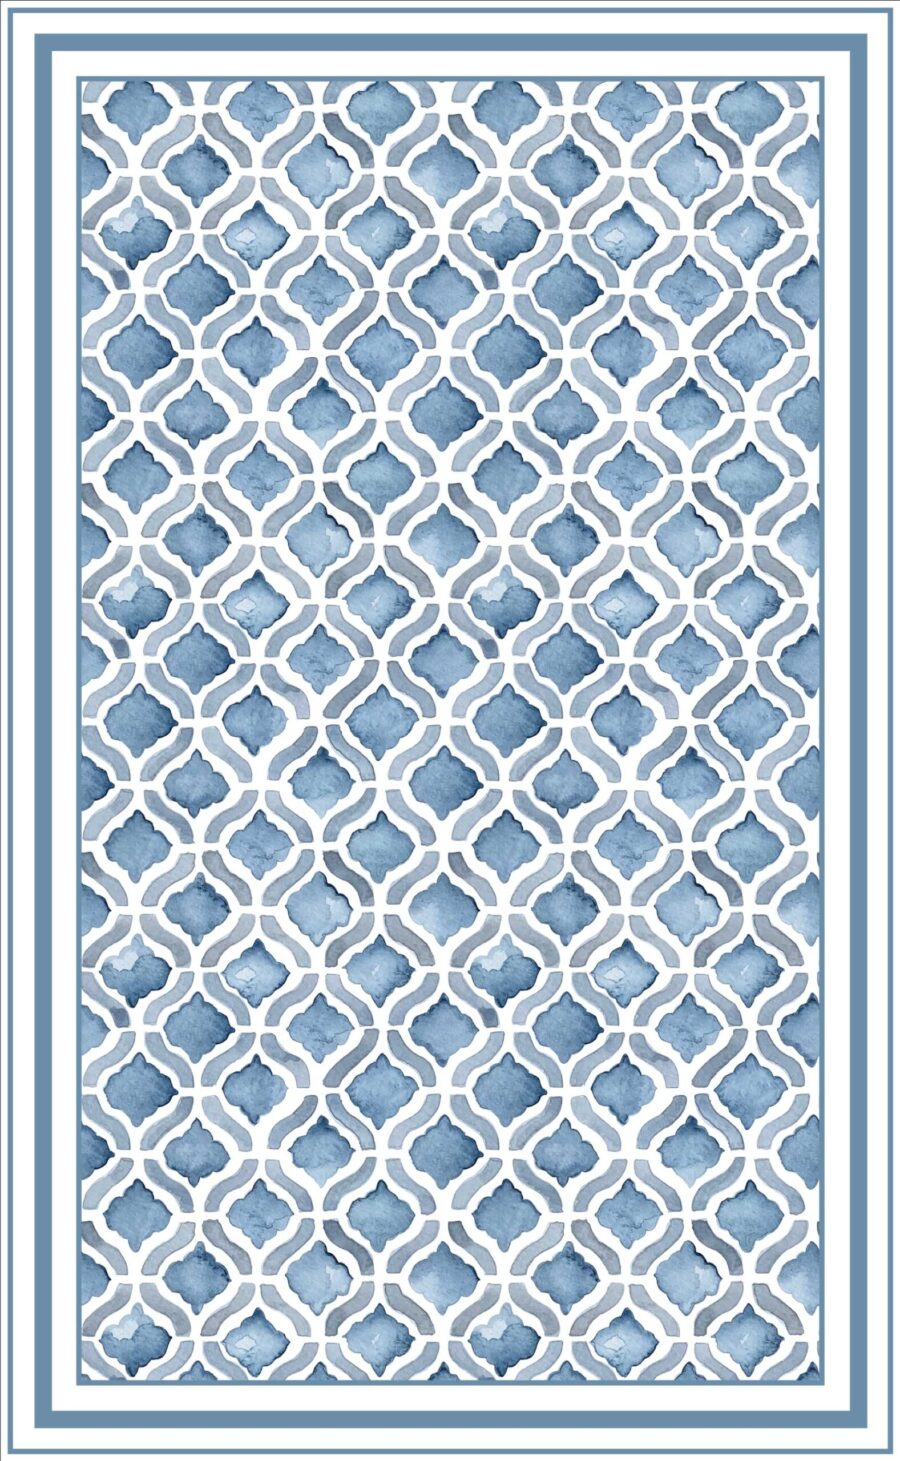 Alfombra vinilica diseño geometrico en acuarelas en tonos azules